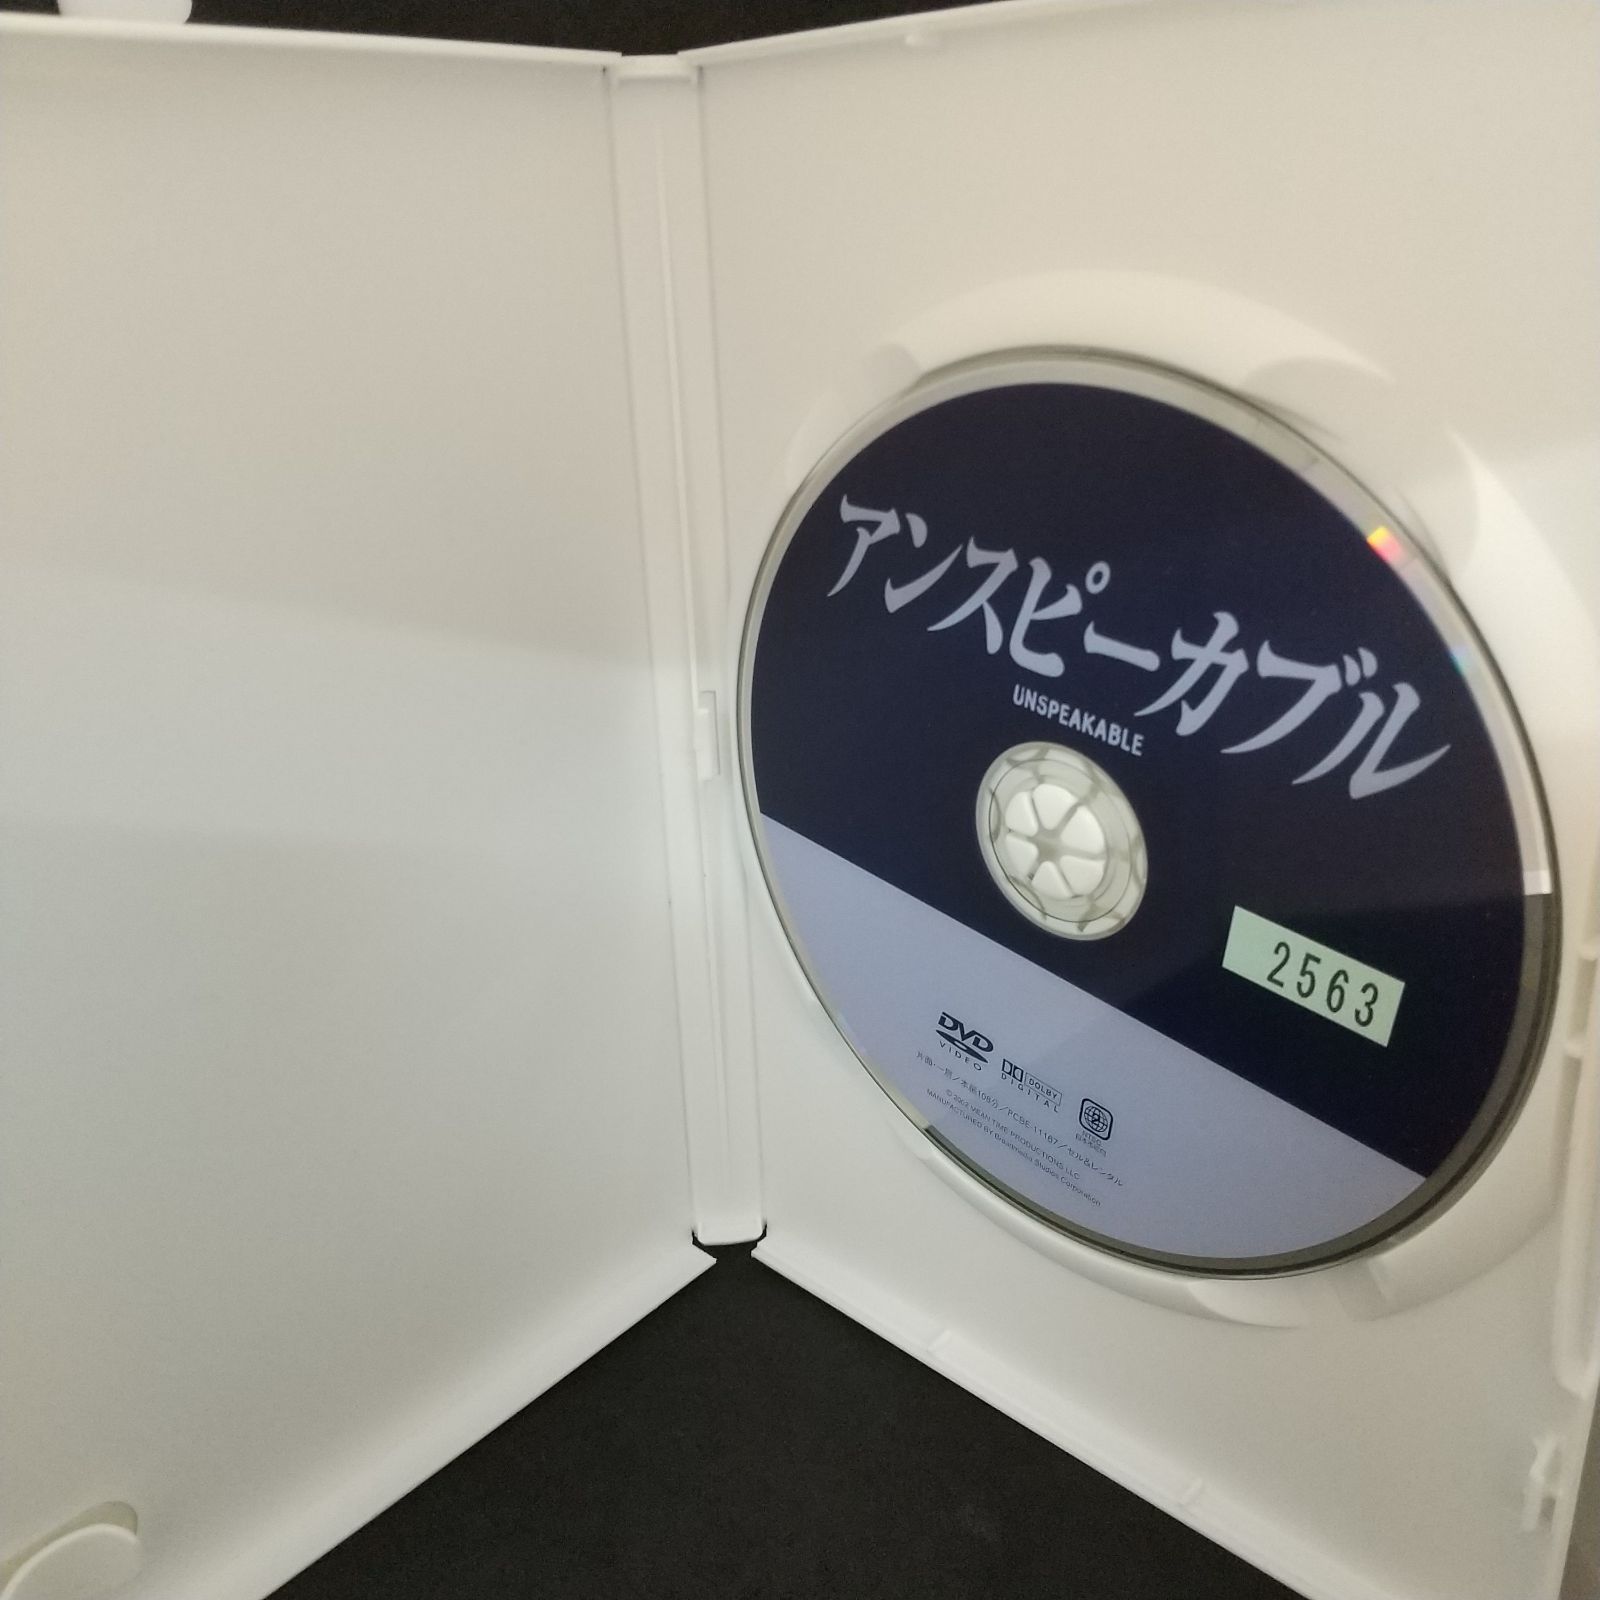 (DVD)アンスピーカブル